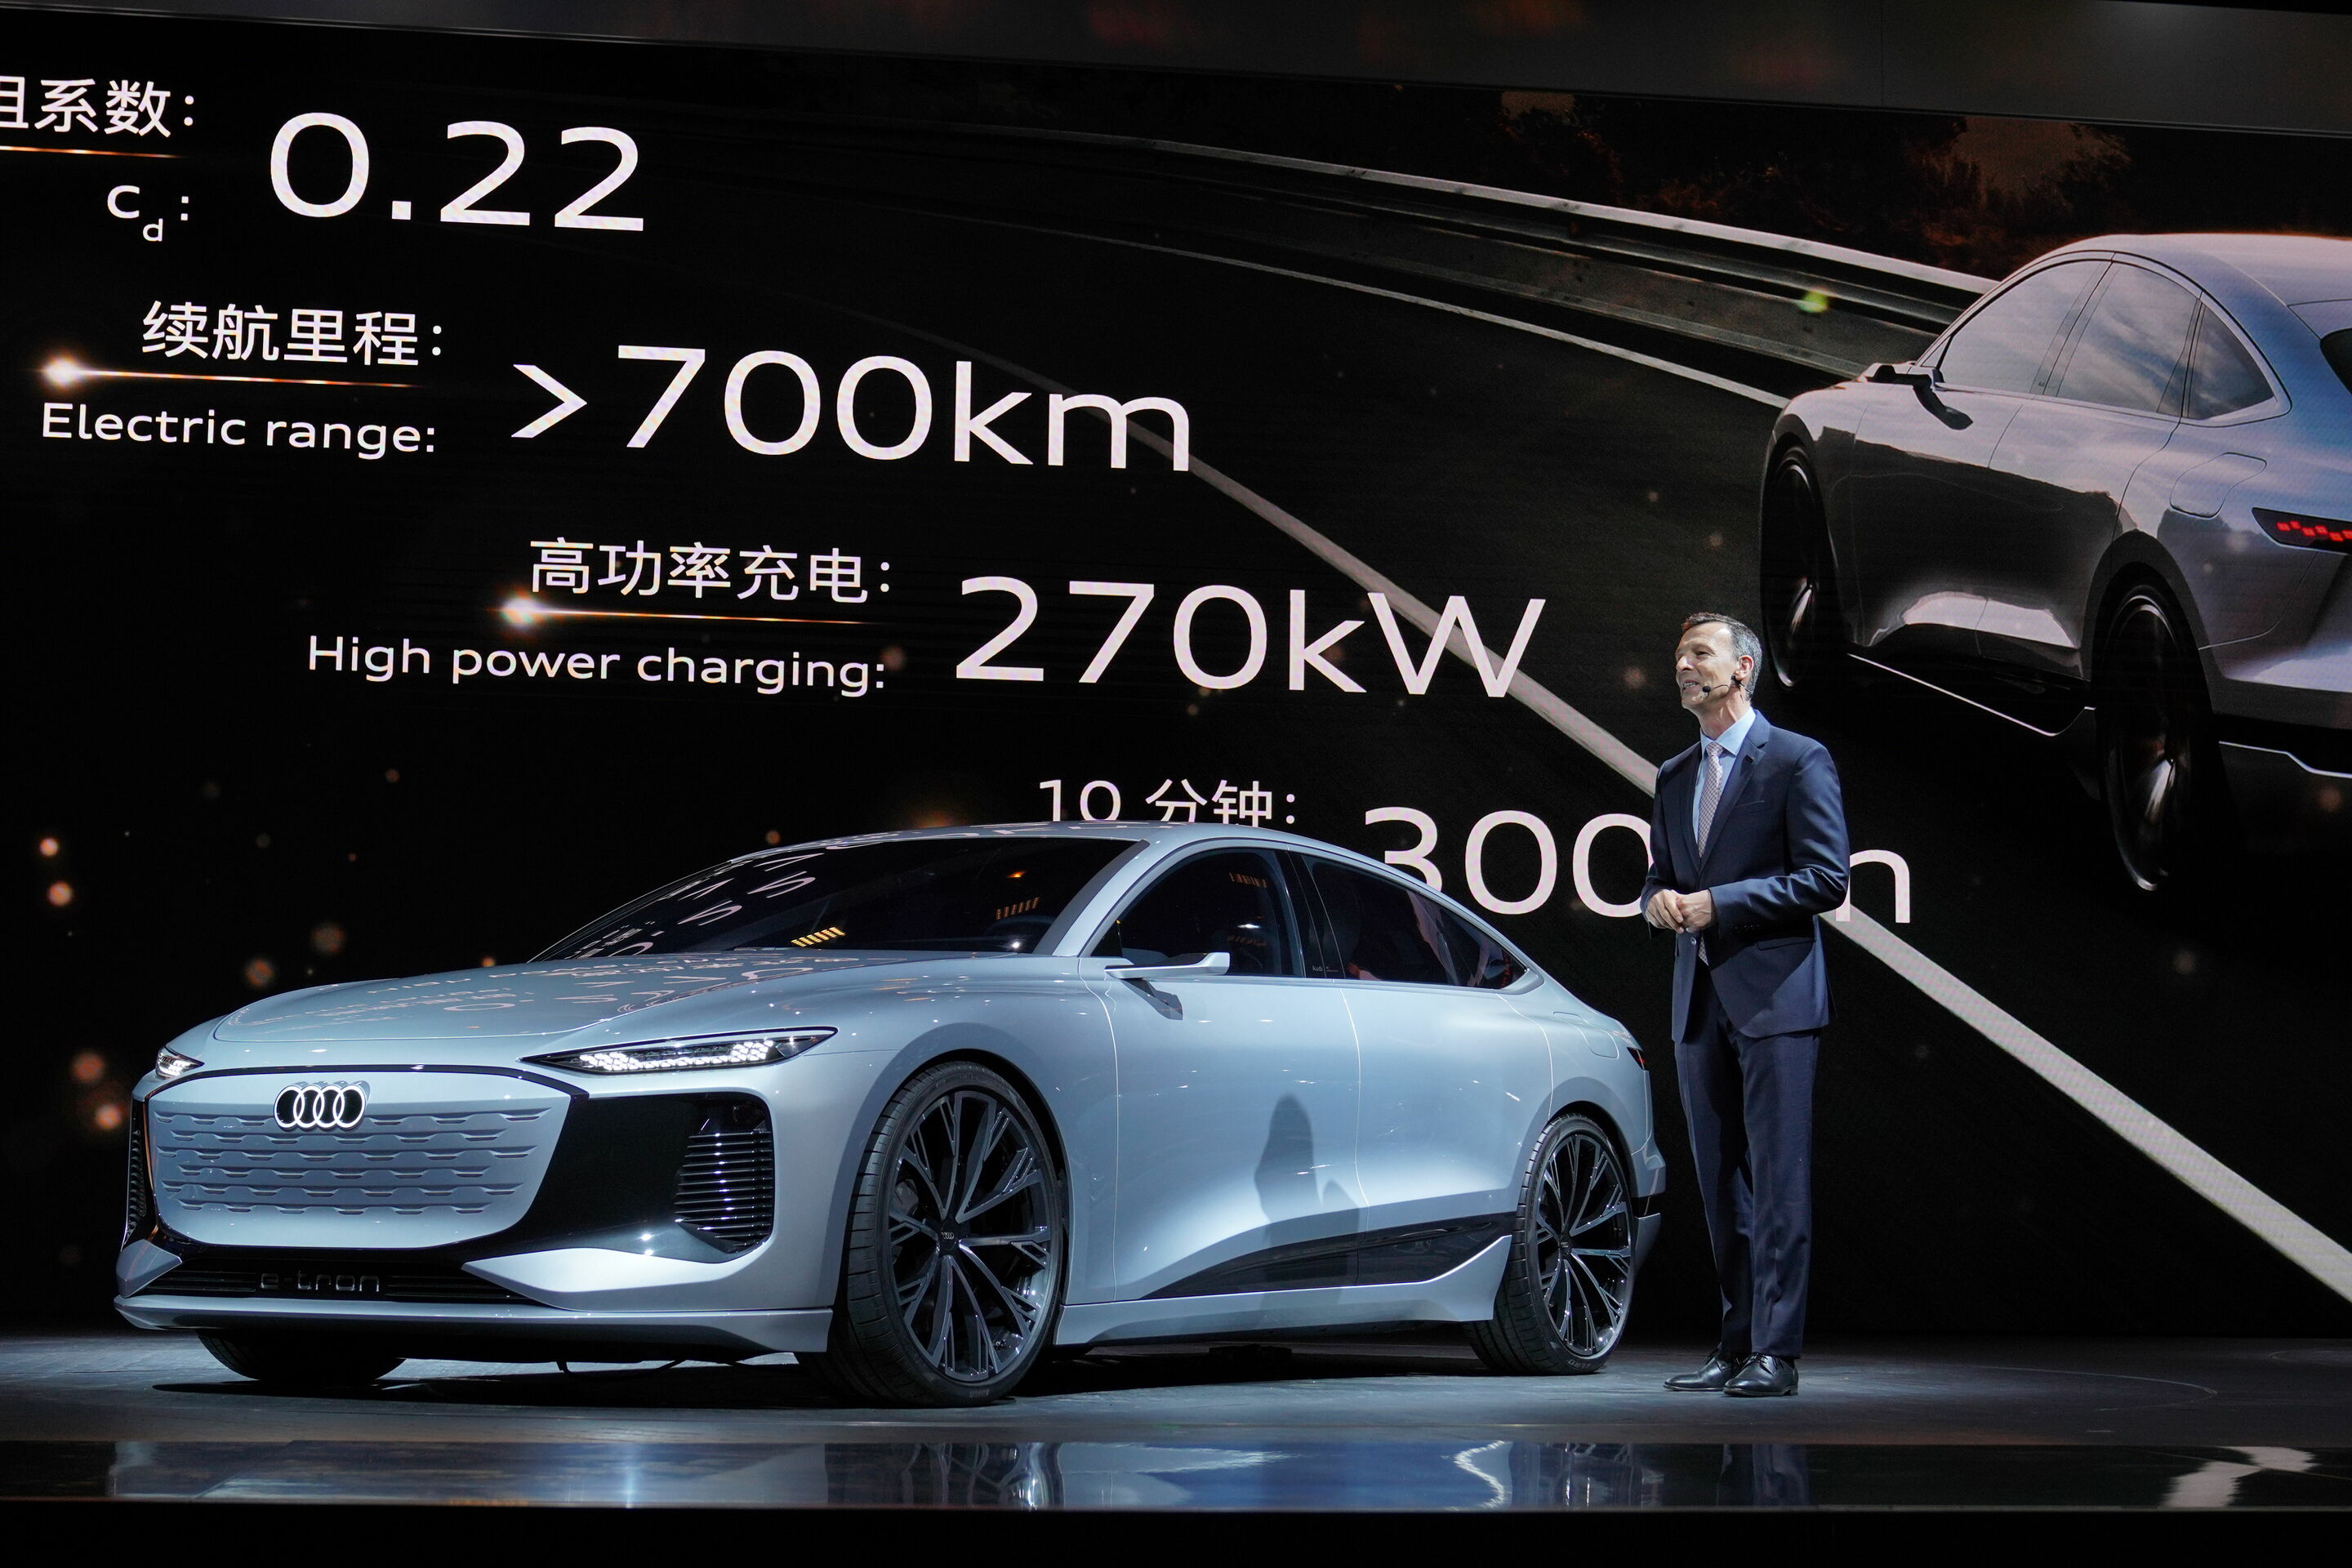 Audi at Auto Shanghai 2021